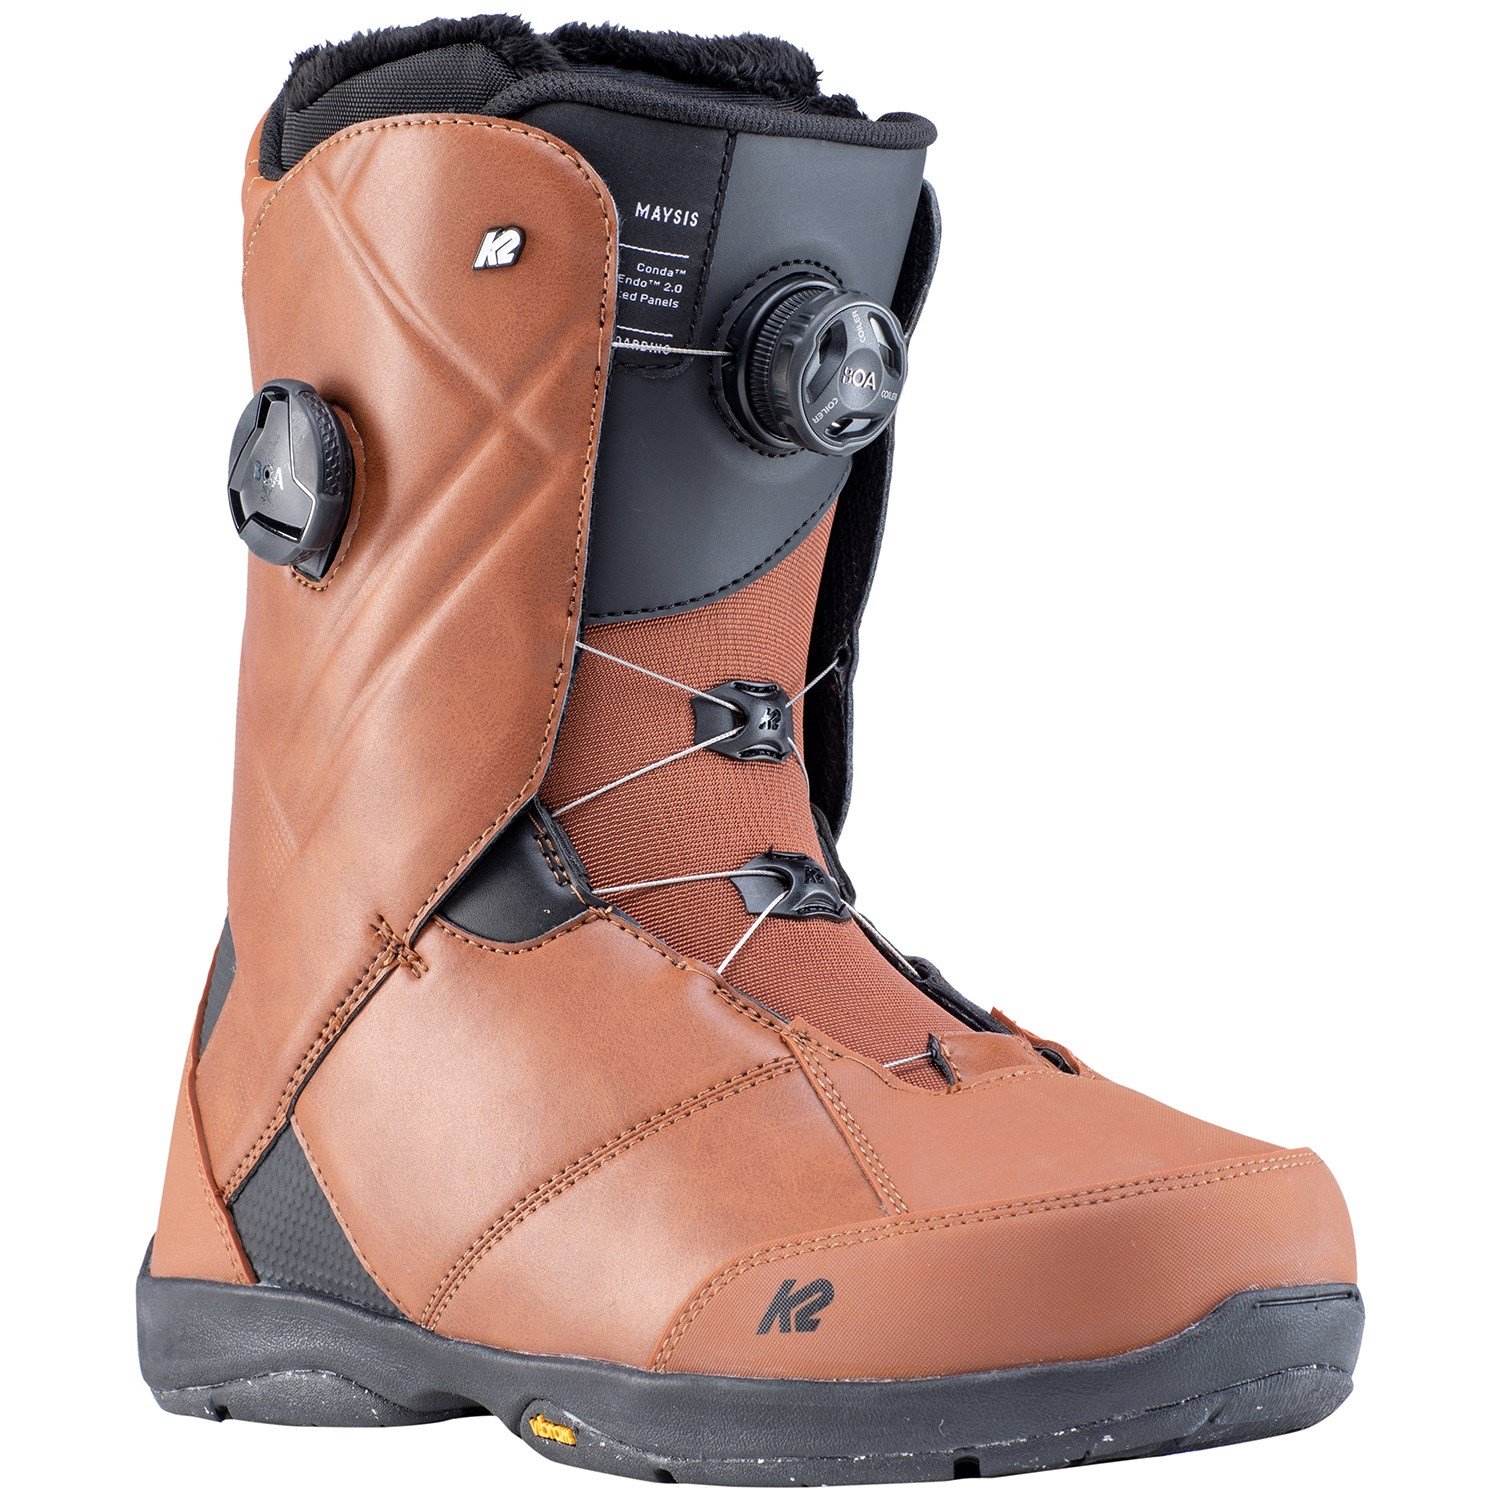 2020 K2 Maysis Mens Snowboard Boots